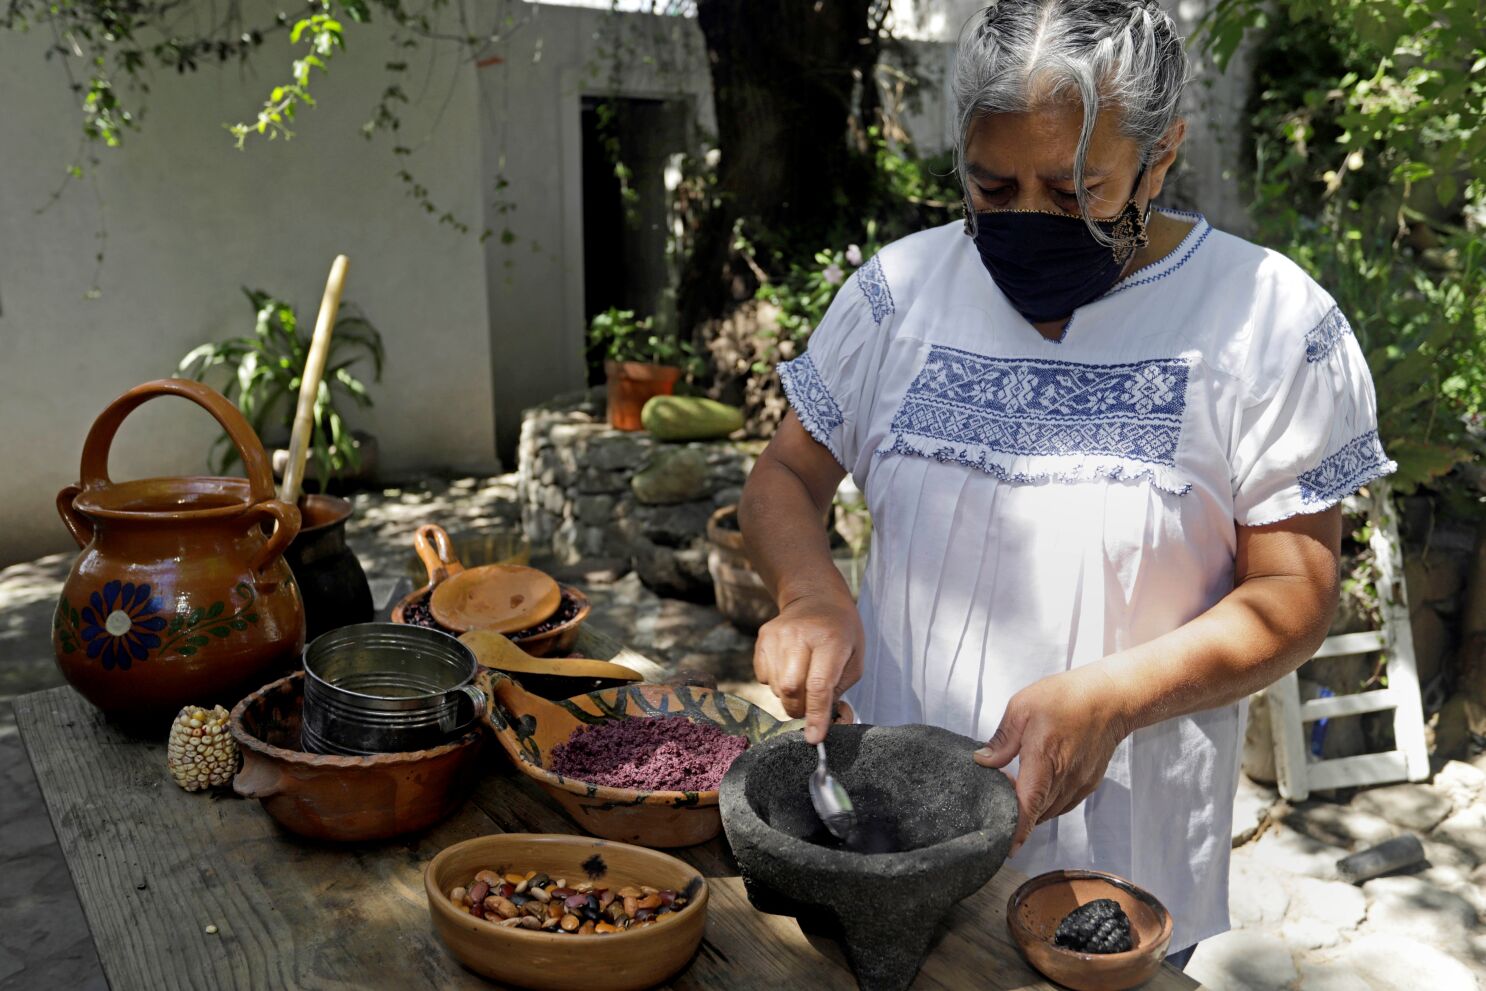 Cocinera indígena gana concurso de platos mexicanos con el prehispánico  atole - Los Angeles Times